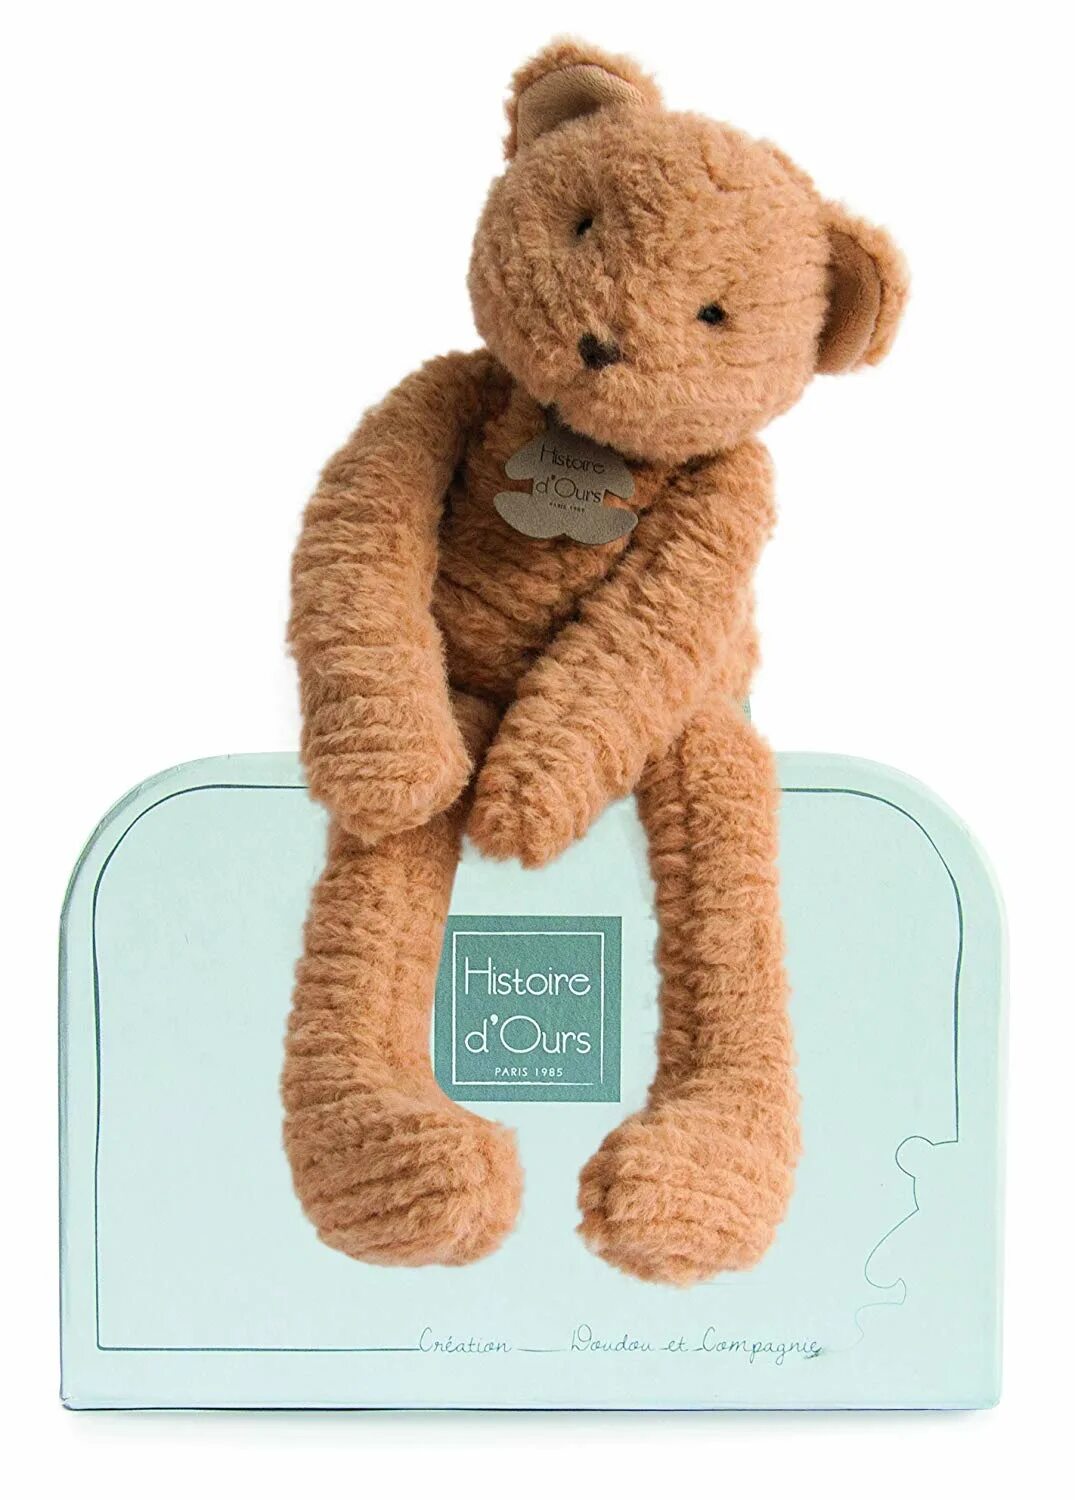 Медовый мишка 38. HM медведь игрушка мягкая. H M медведь игрушка. Плюшевый мишка из HM. Игрушка медведь из HM.